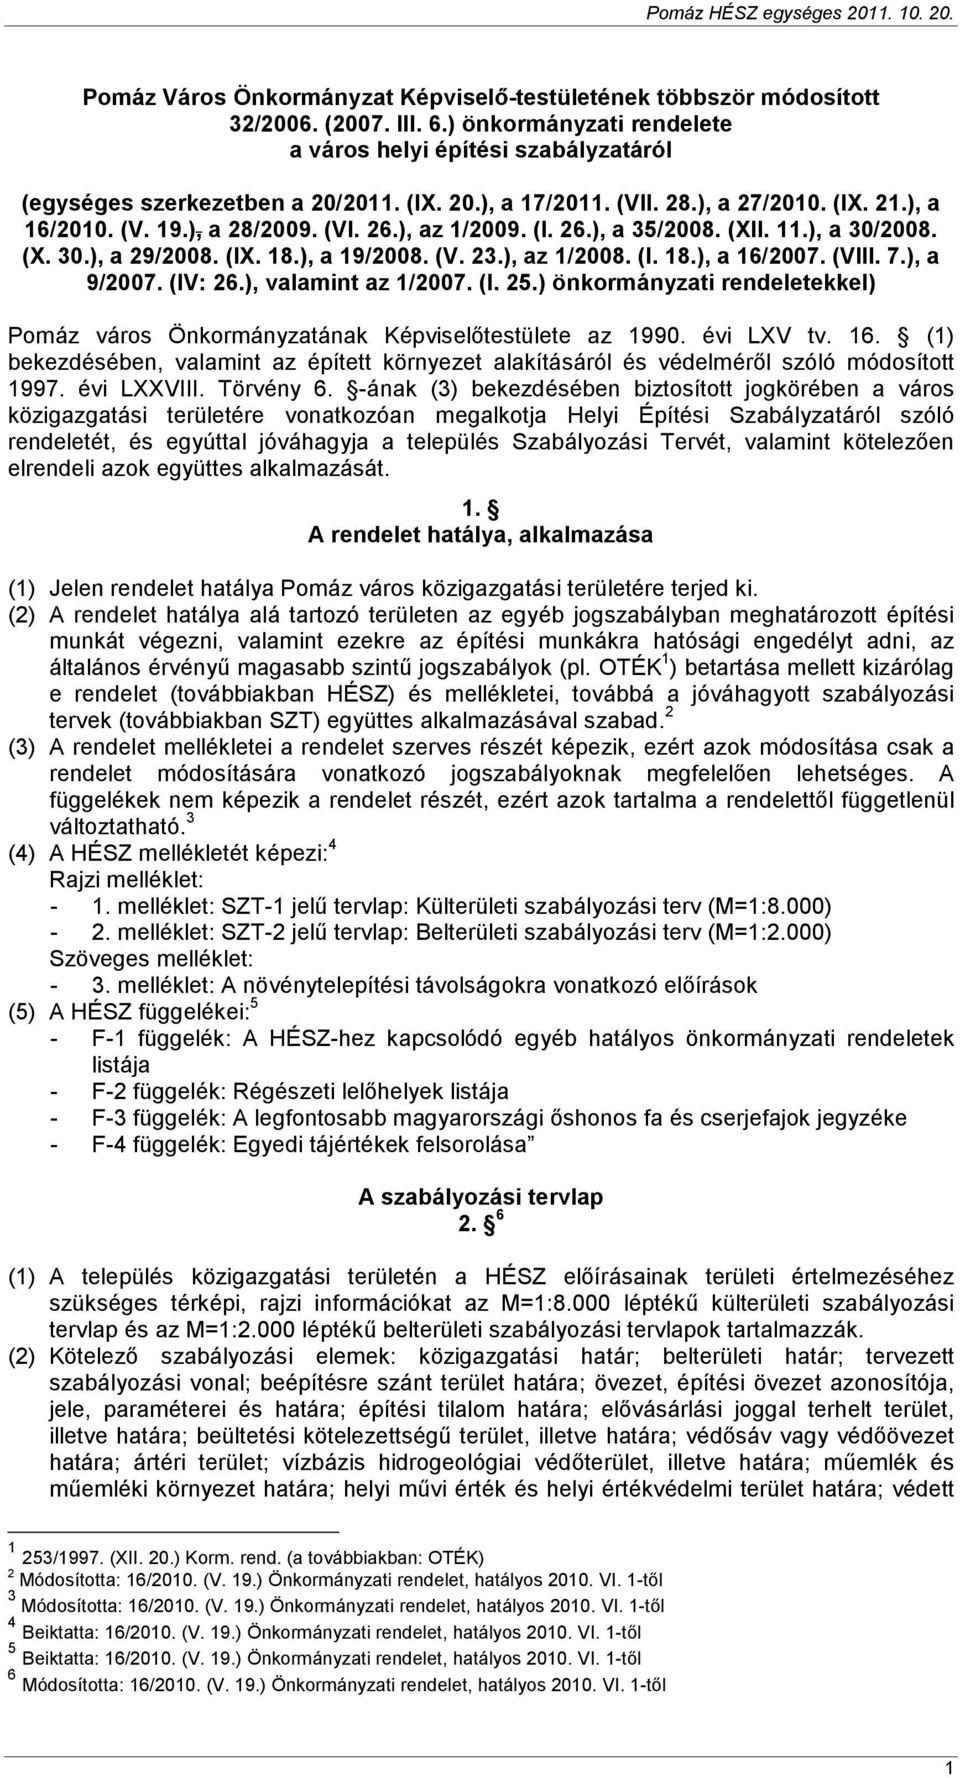 (VIII. 7.), a 9/2007. (IV: 26.), valamint az 1/2007. (I. 25.) önkormányzati rendeletekkel) Pomáz város Önkormányzatának Képviselıtestülete az 1990. évi LXV tv. 16.